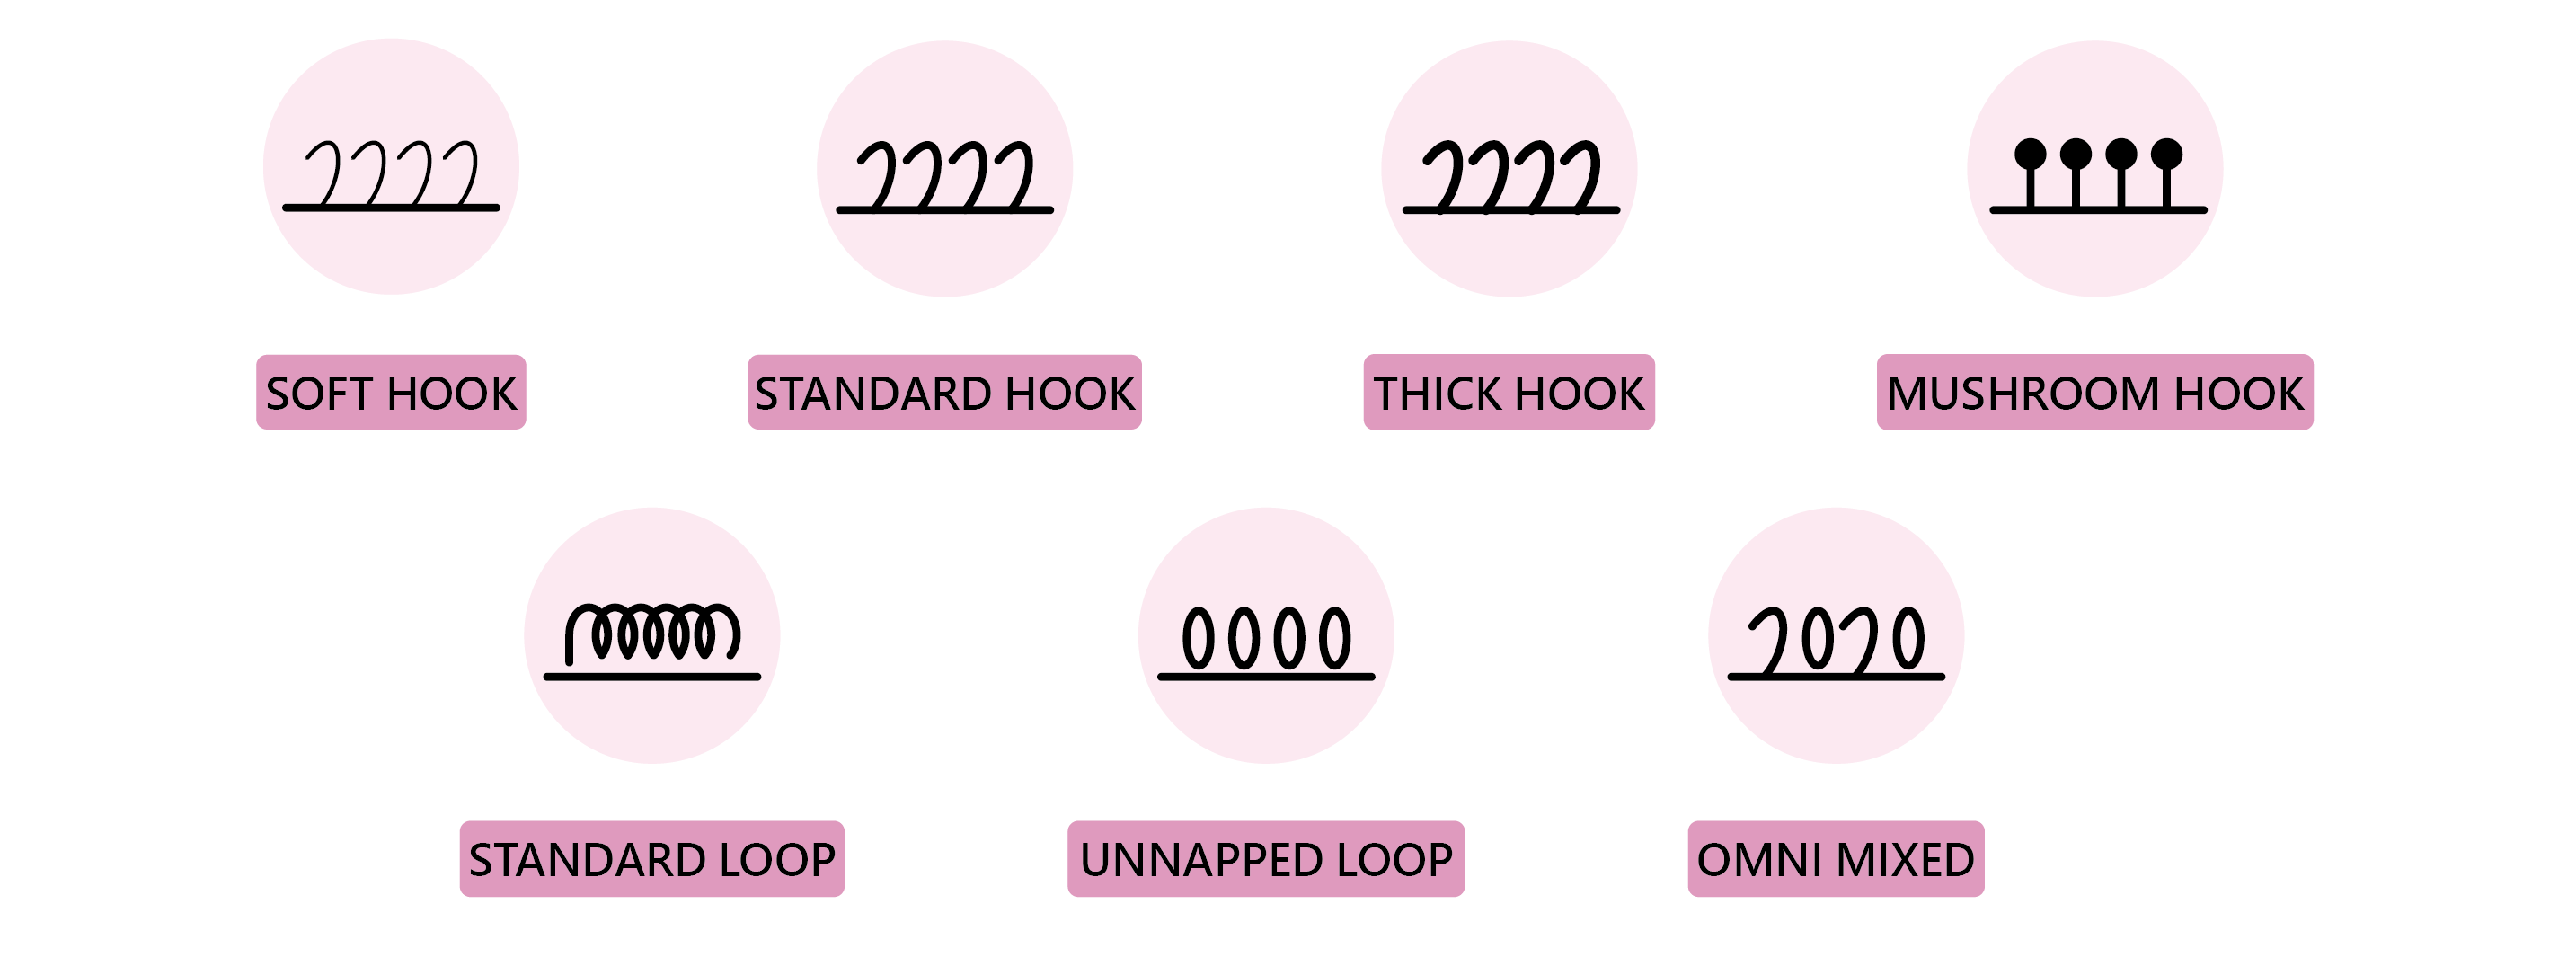 Functional hook loop category：